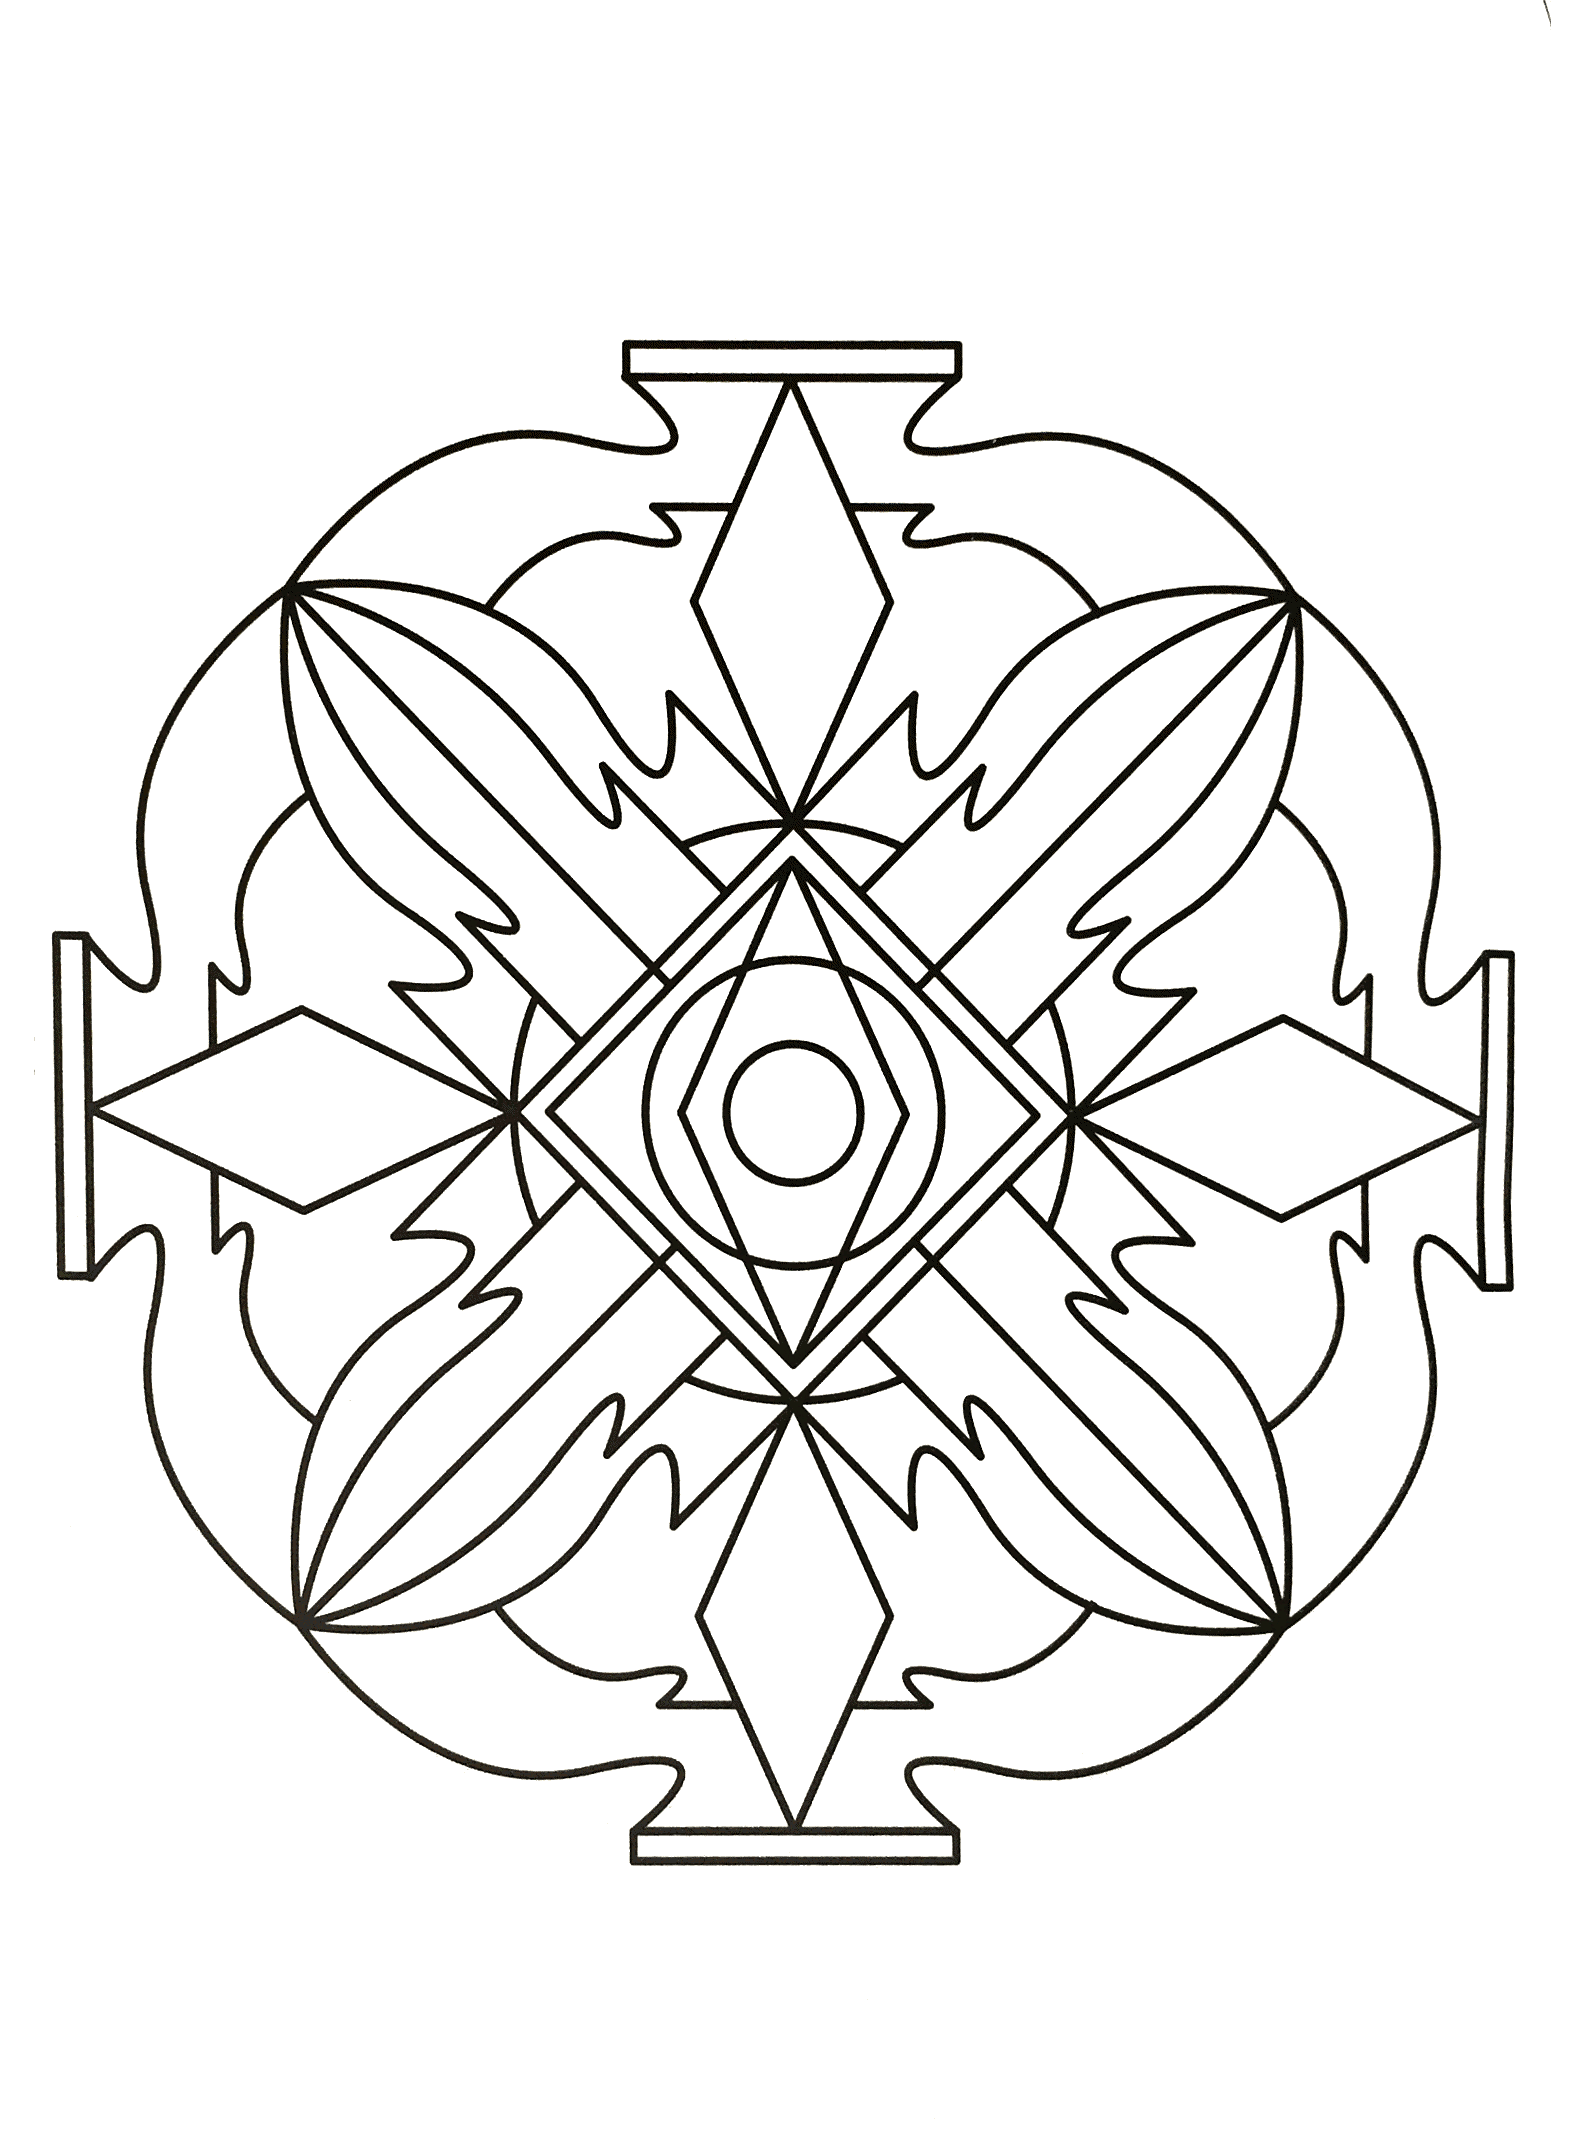 Quand colorier un Mandala devient réellement de l'Art Thérapie ... C'est parti pour un bon moment de décompression.